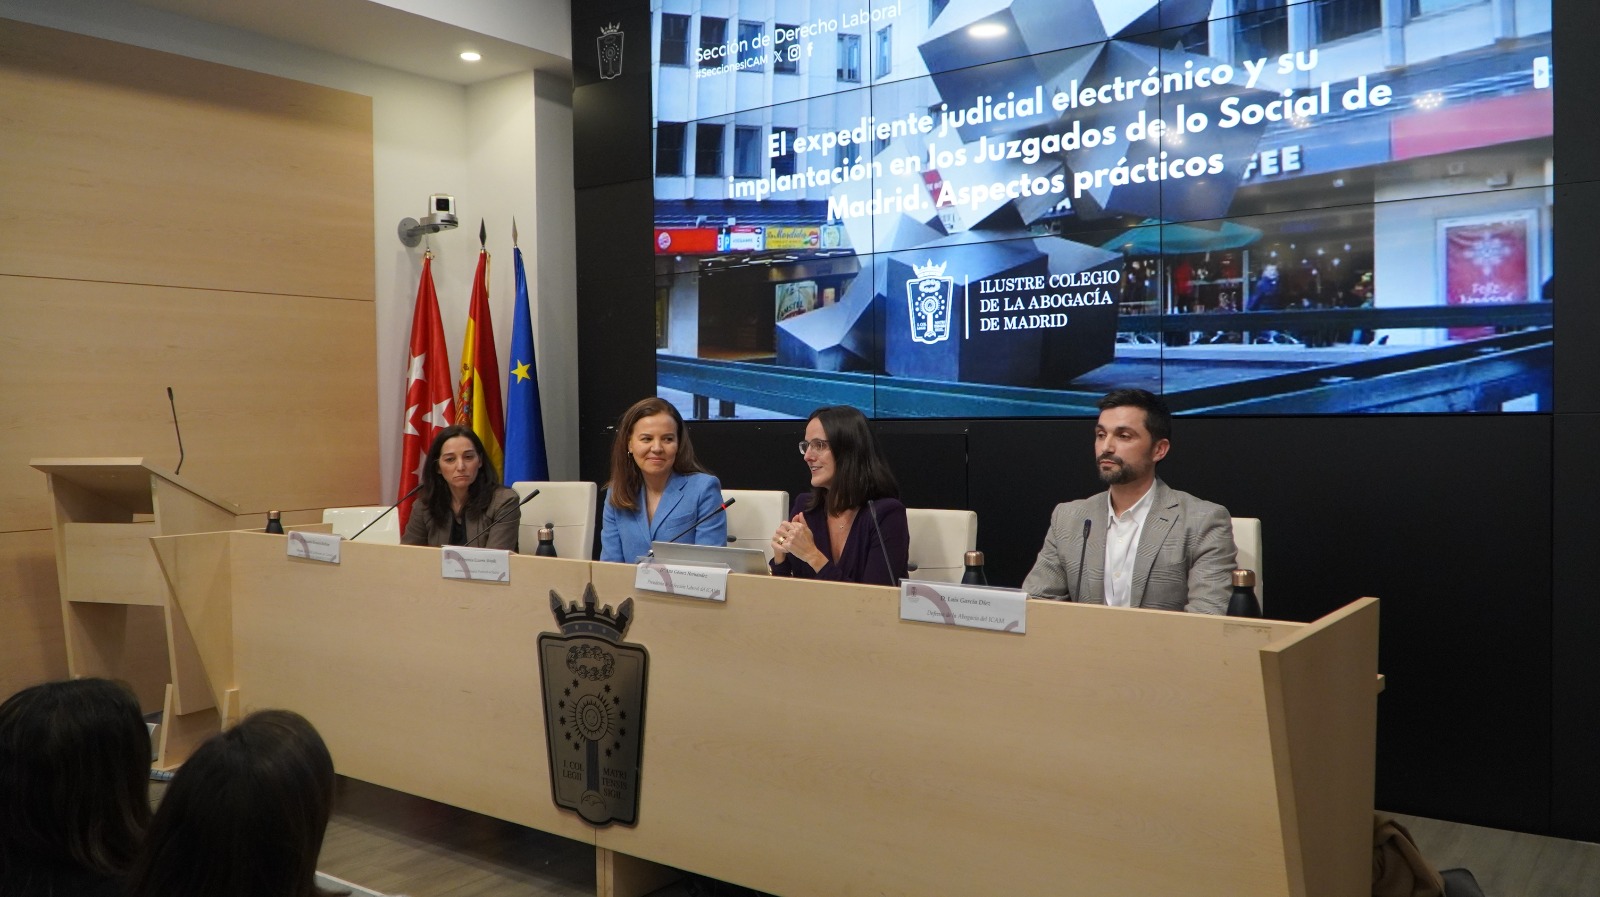 EL ICAM aborda en una jornada práctica la implementación del expediente judicial electrónico en los Juzgados de lo Social de Madrid